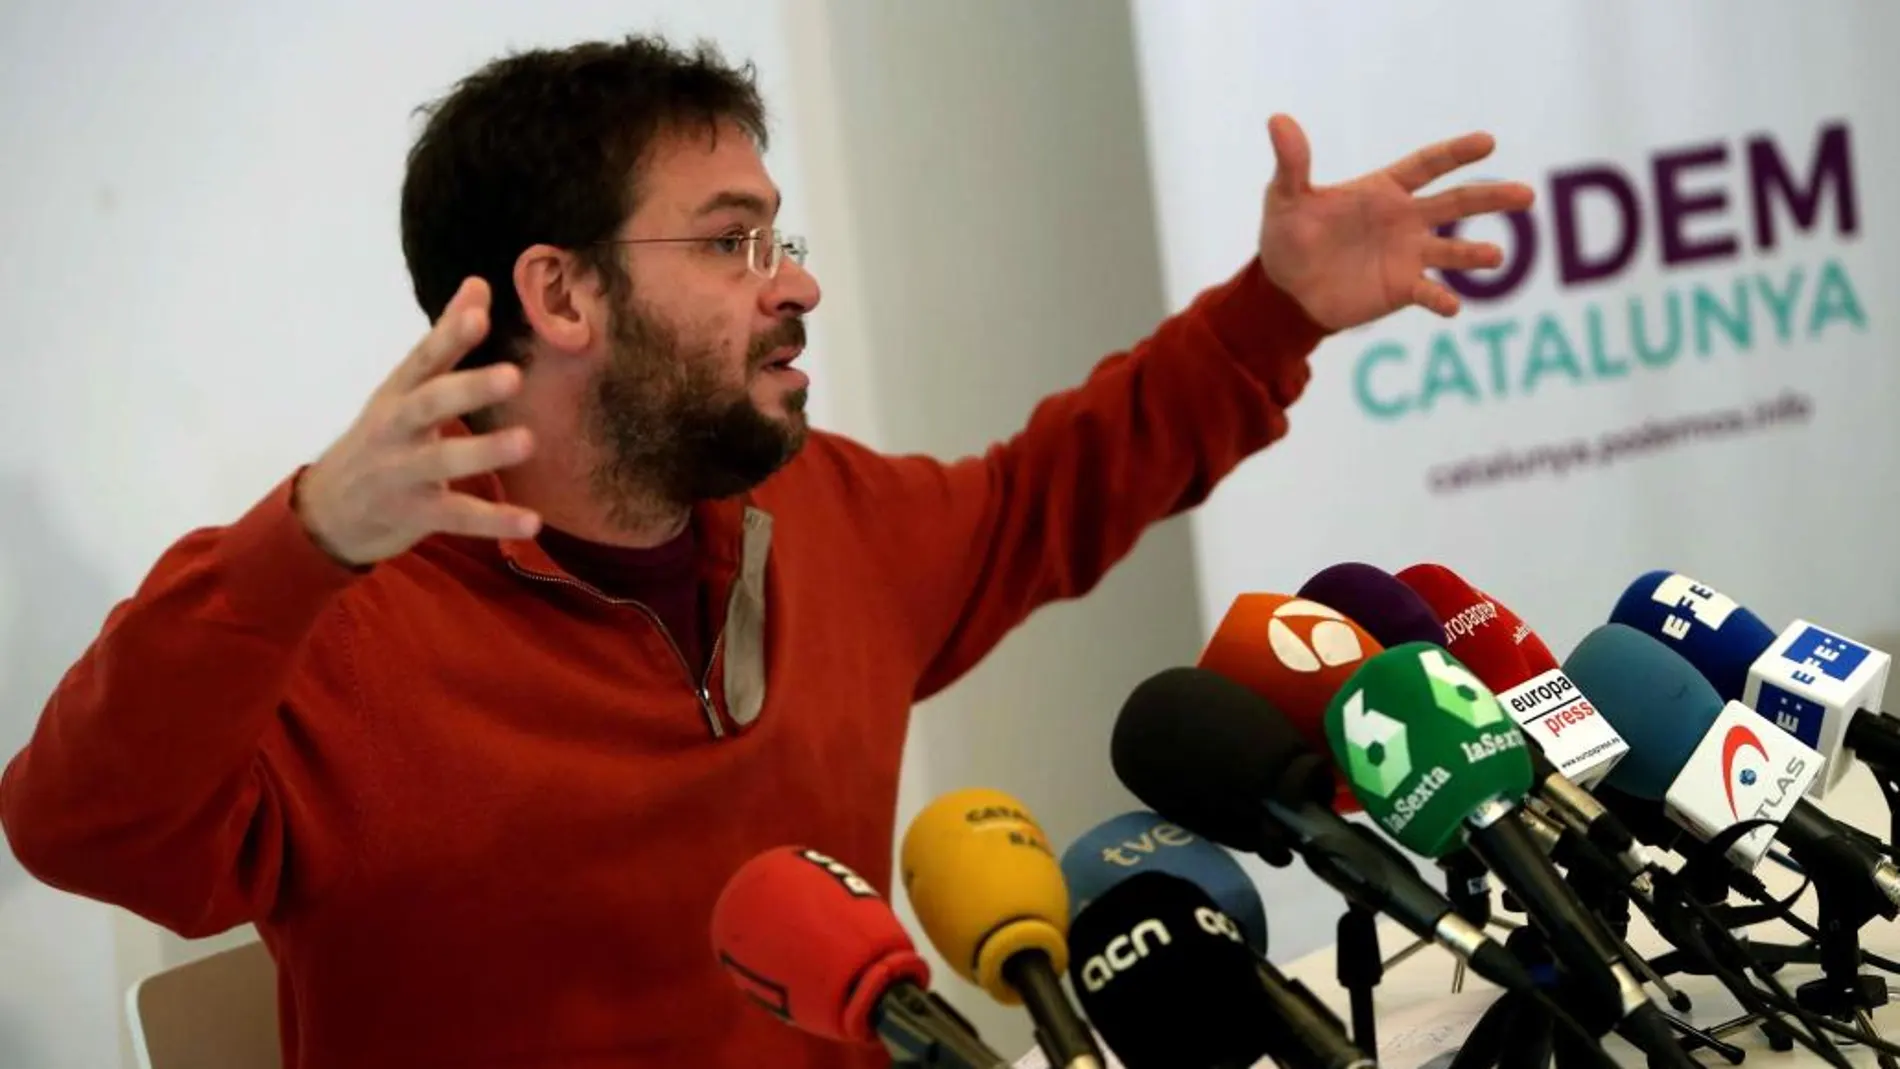 El secretario general de Podem Catalunya, Albano-Dante Fachin, durante la rueda de prensa en la que ha anunciado que dimite de su cargo y que deja de militar en la organización política